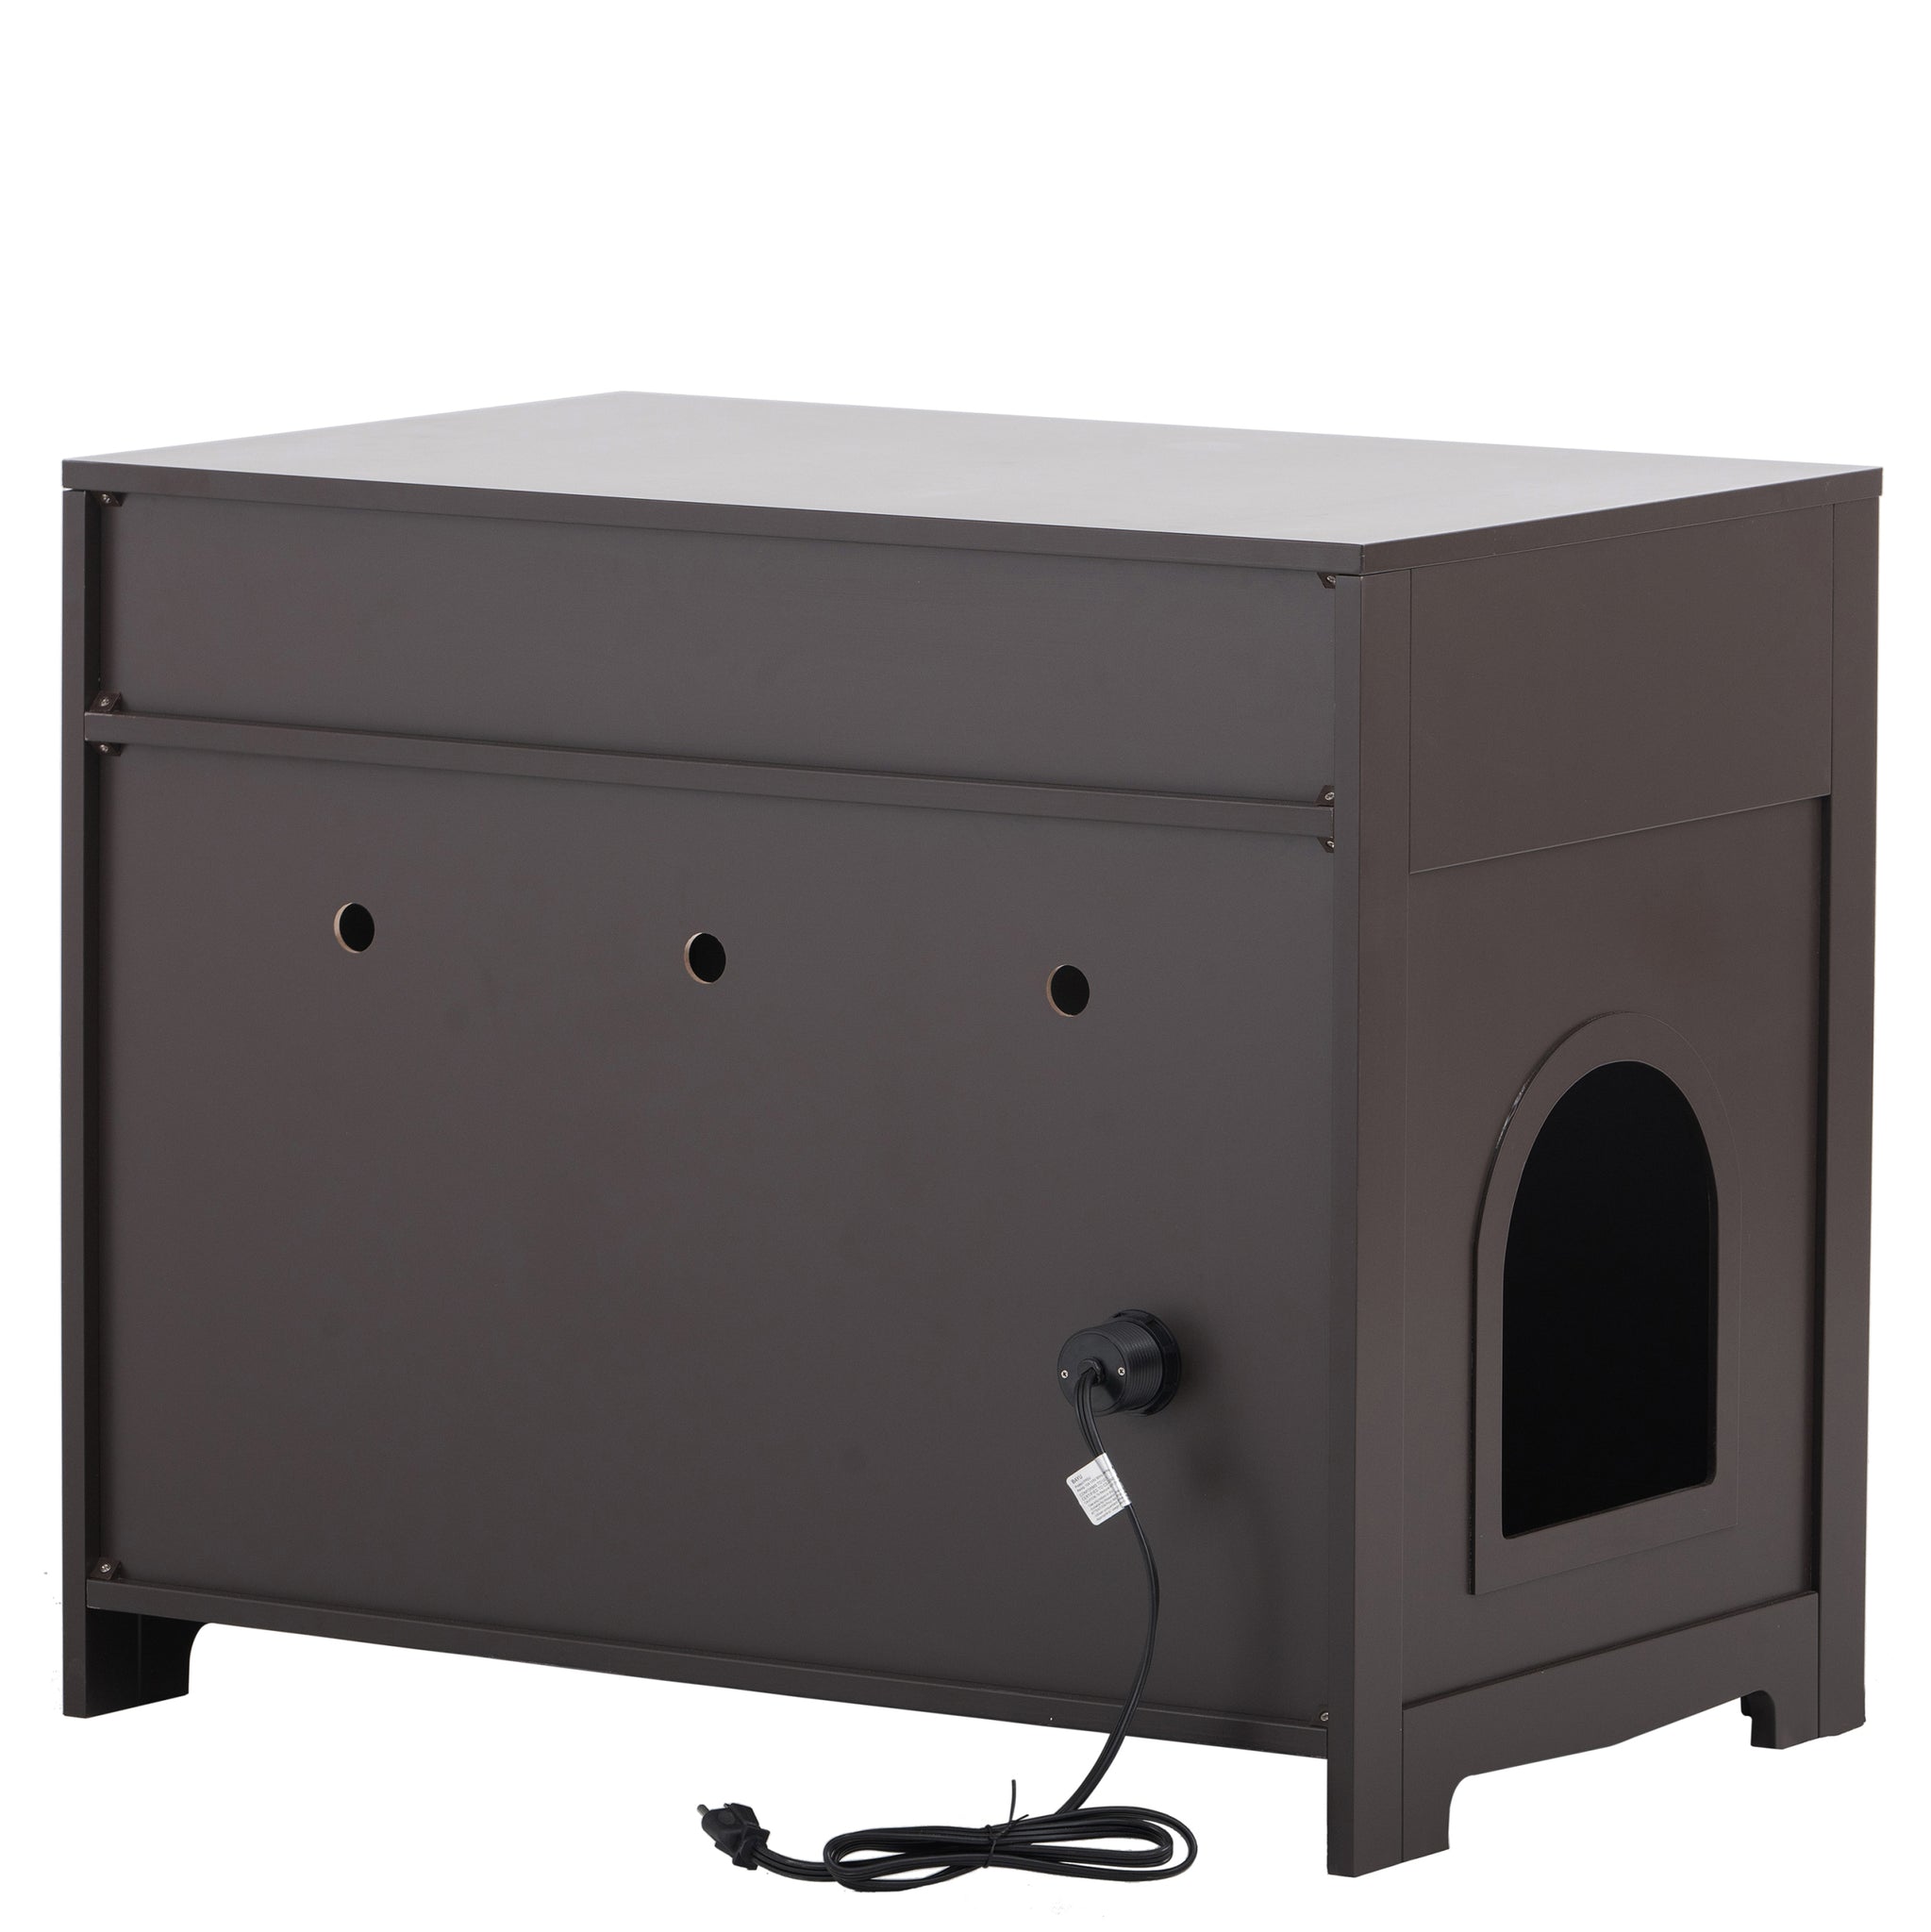 Litter Box Enclosure, Cat Litter Box Furniture with walnut-mdf